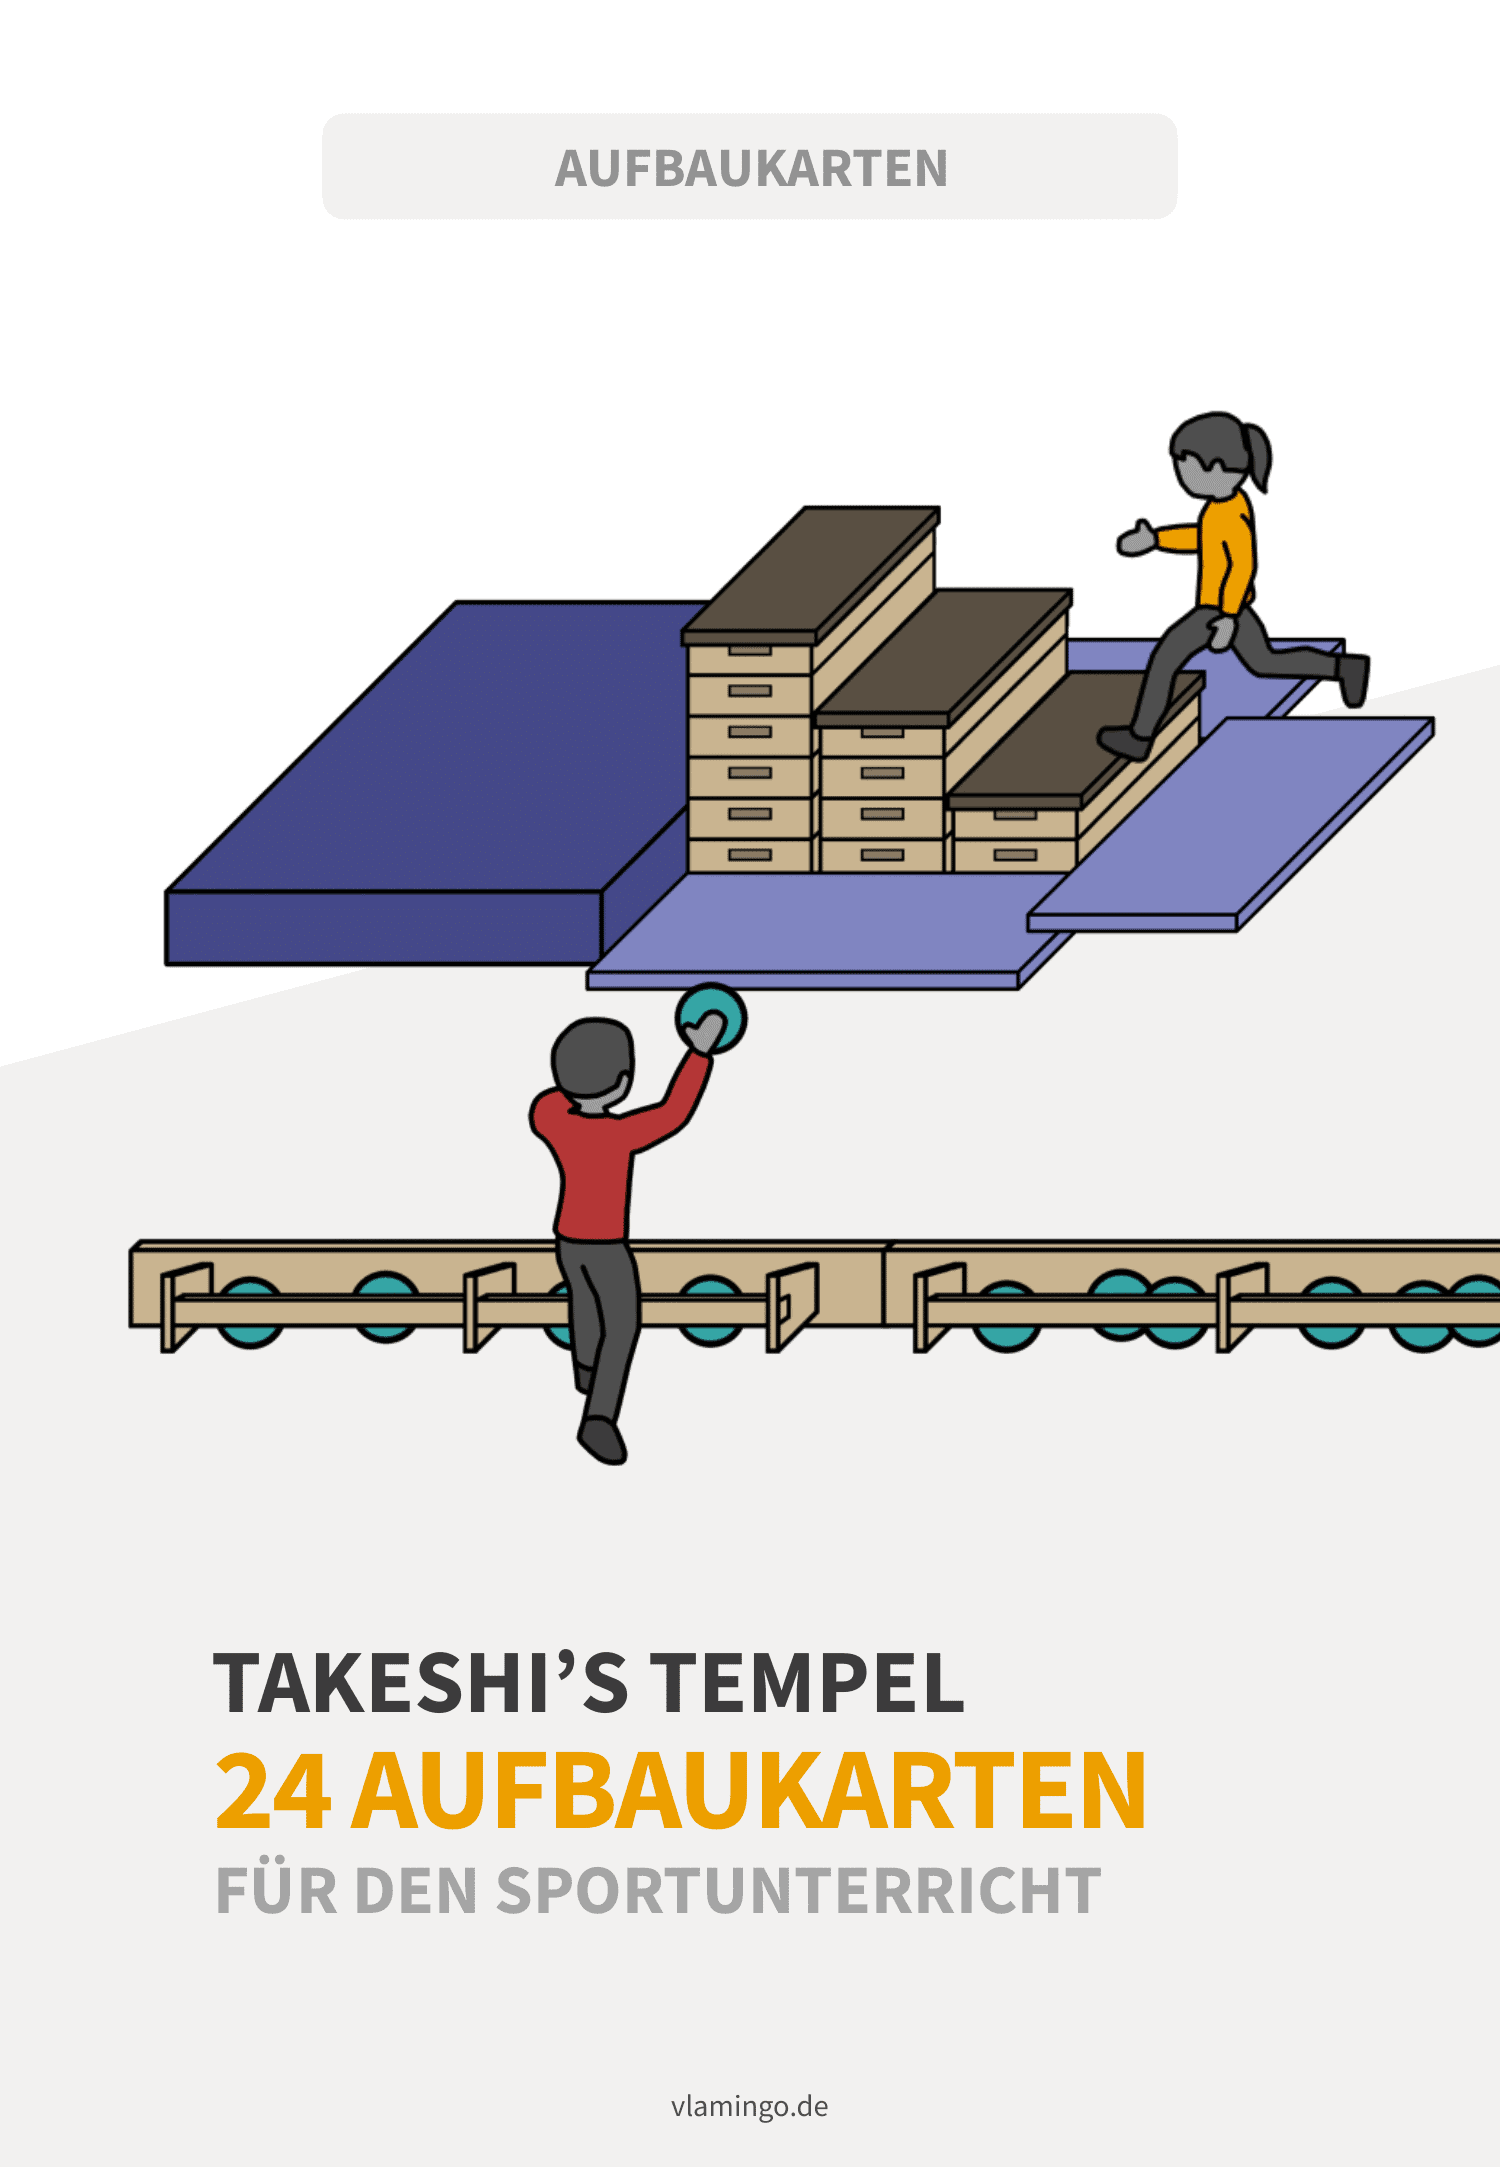 Takeshi's Tempel (Castle) - Aufbaukarten für den Sportunterricht